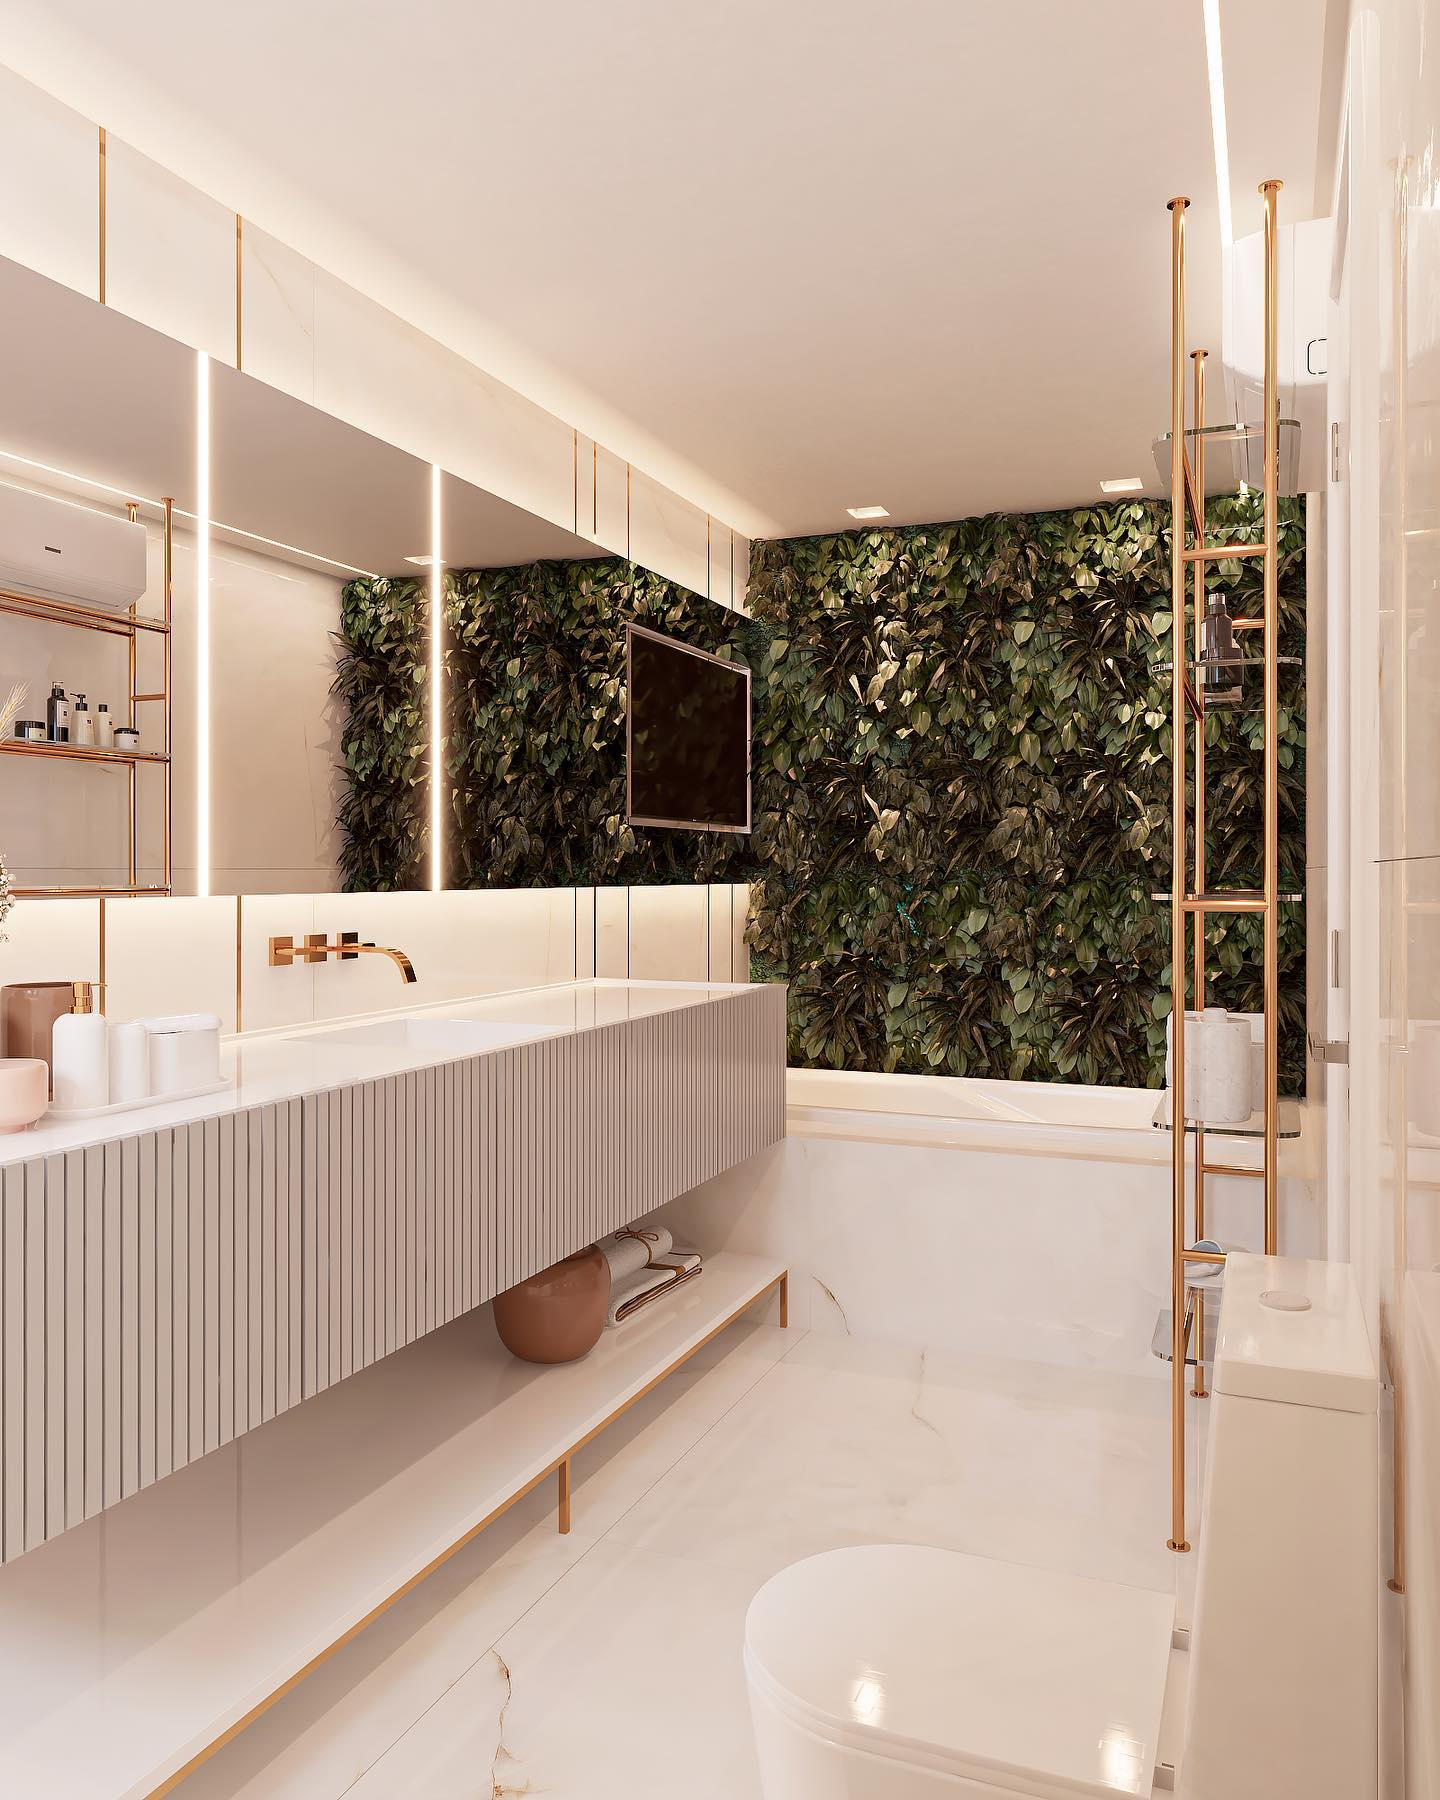 Banheiro contemporâneo branco e dourado com filetes jardim vertical e banheira Decor Salteado